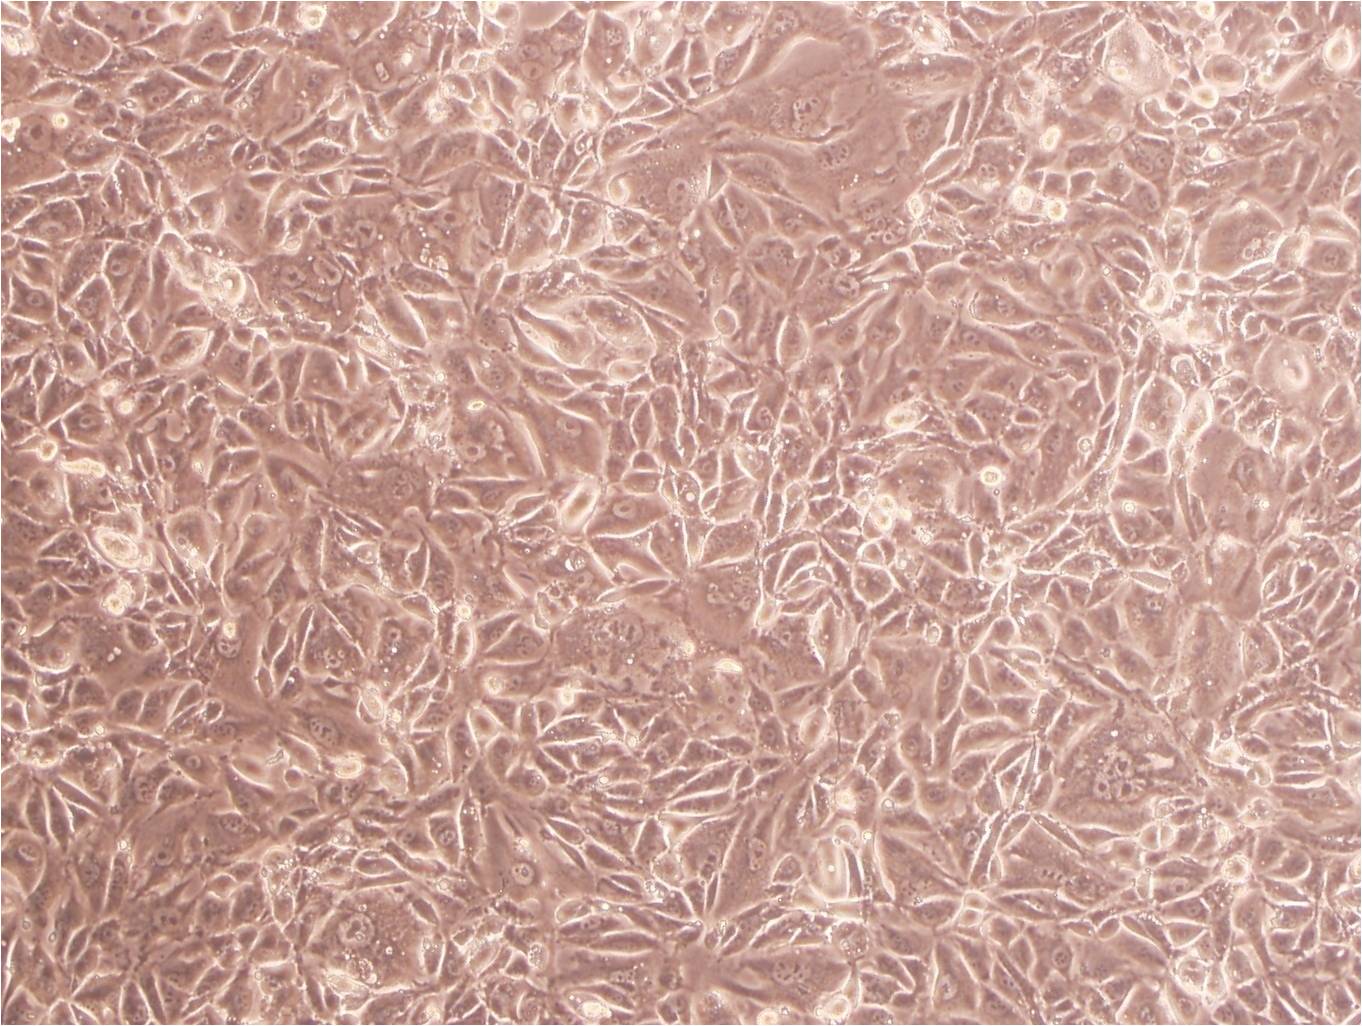 MC3T3-E1 Subclone 24 Cells(赠送Str鉴定报告)|小鼠胚胎成骨细胞